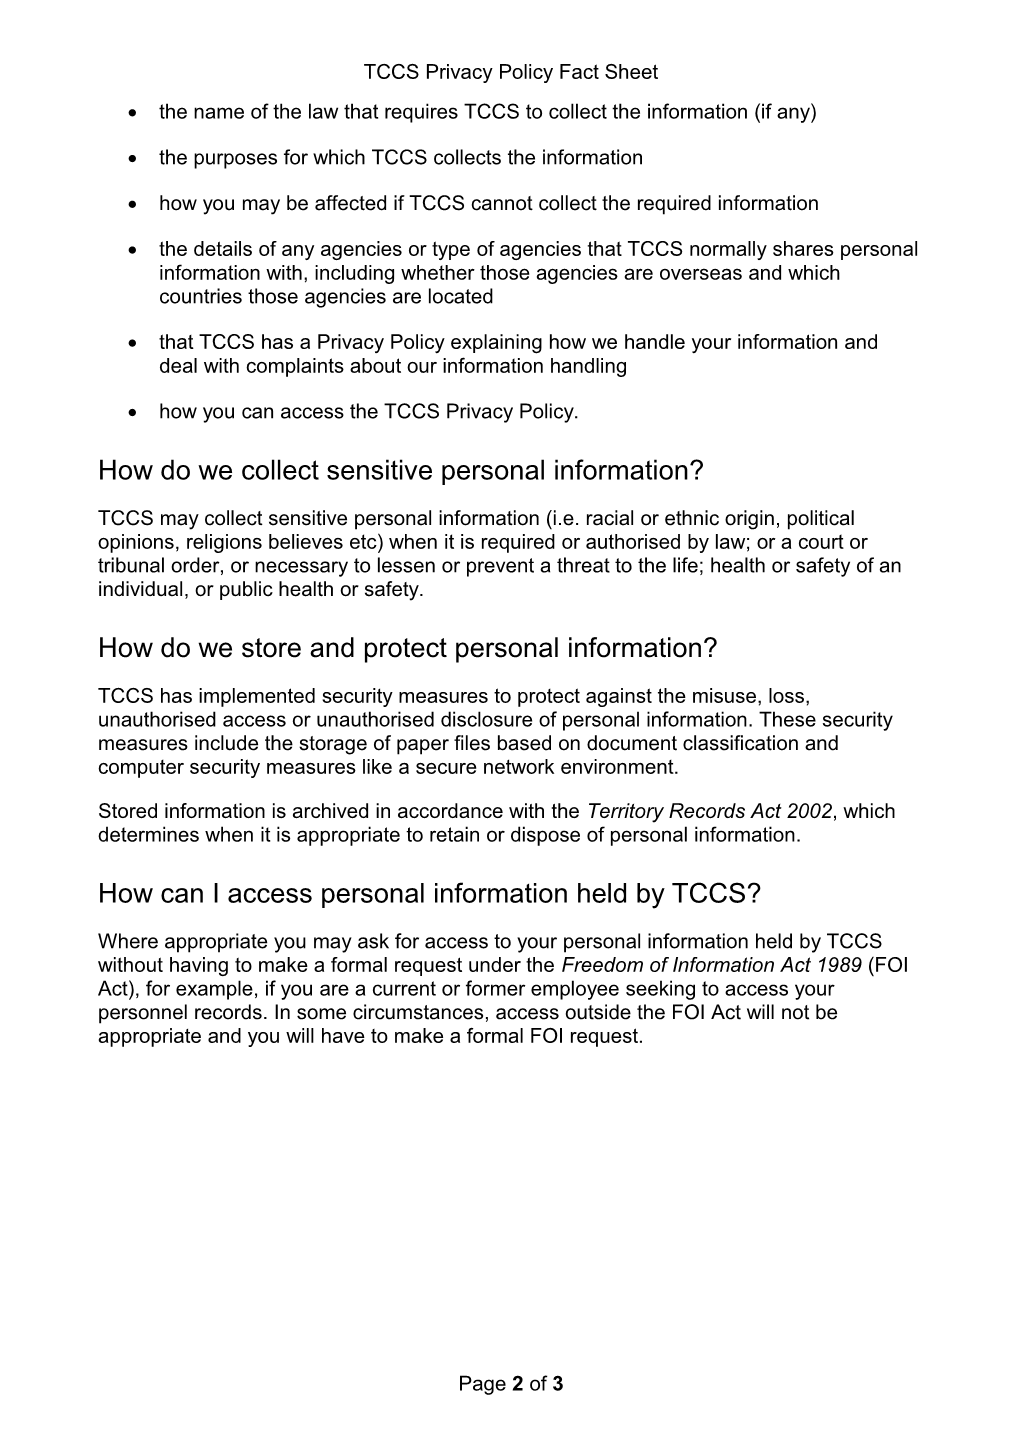 TCCS Fact Sheet